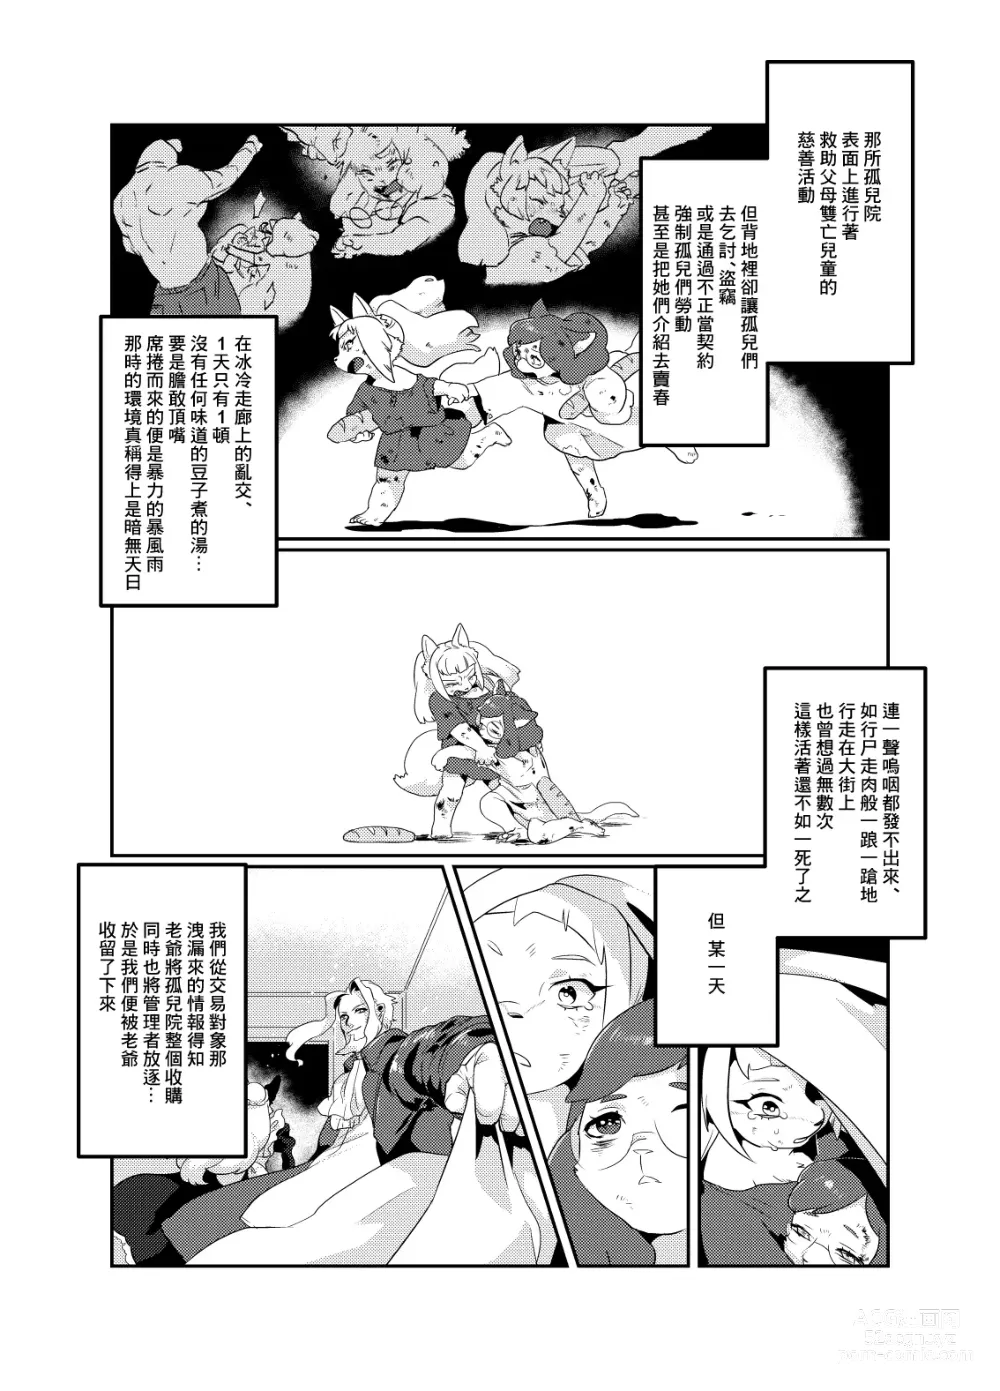 Page 12 of doujinshi Meido inHEAVEN